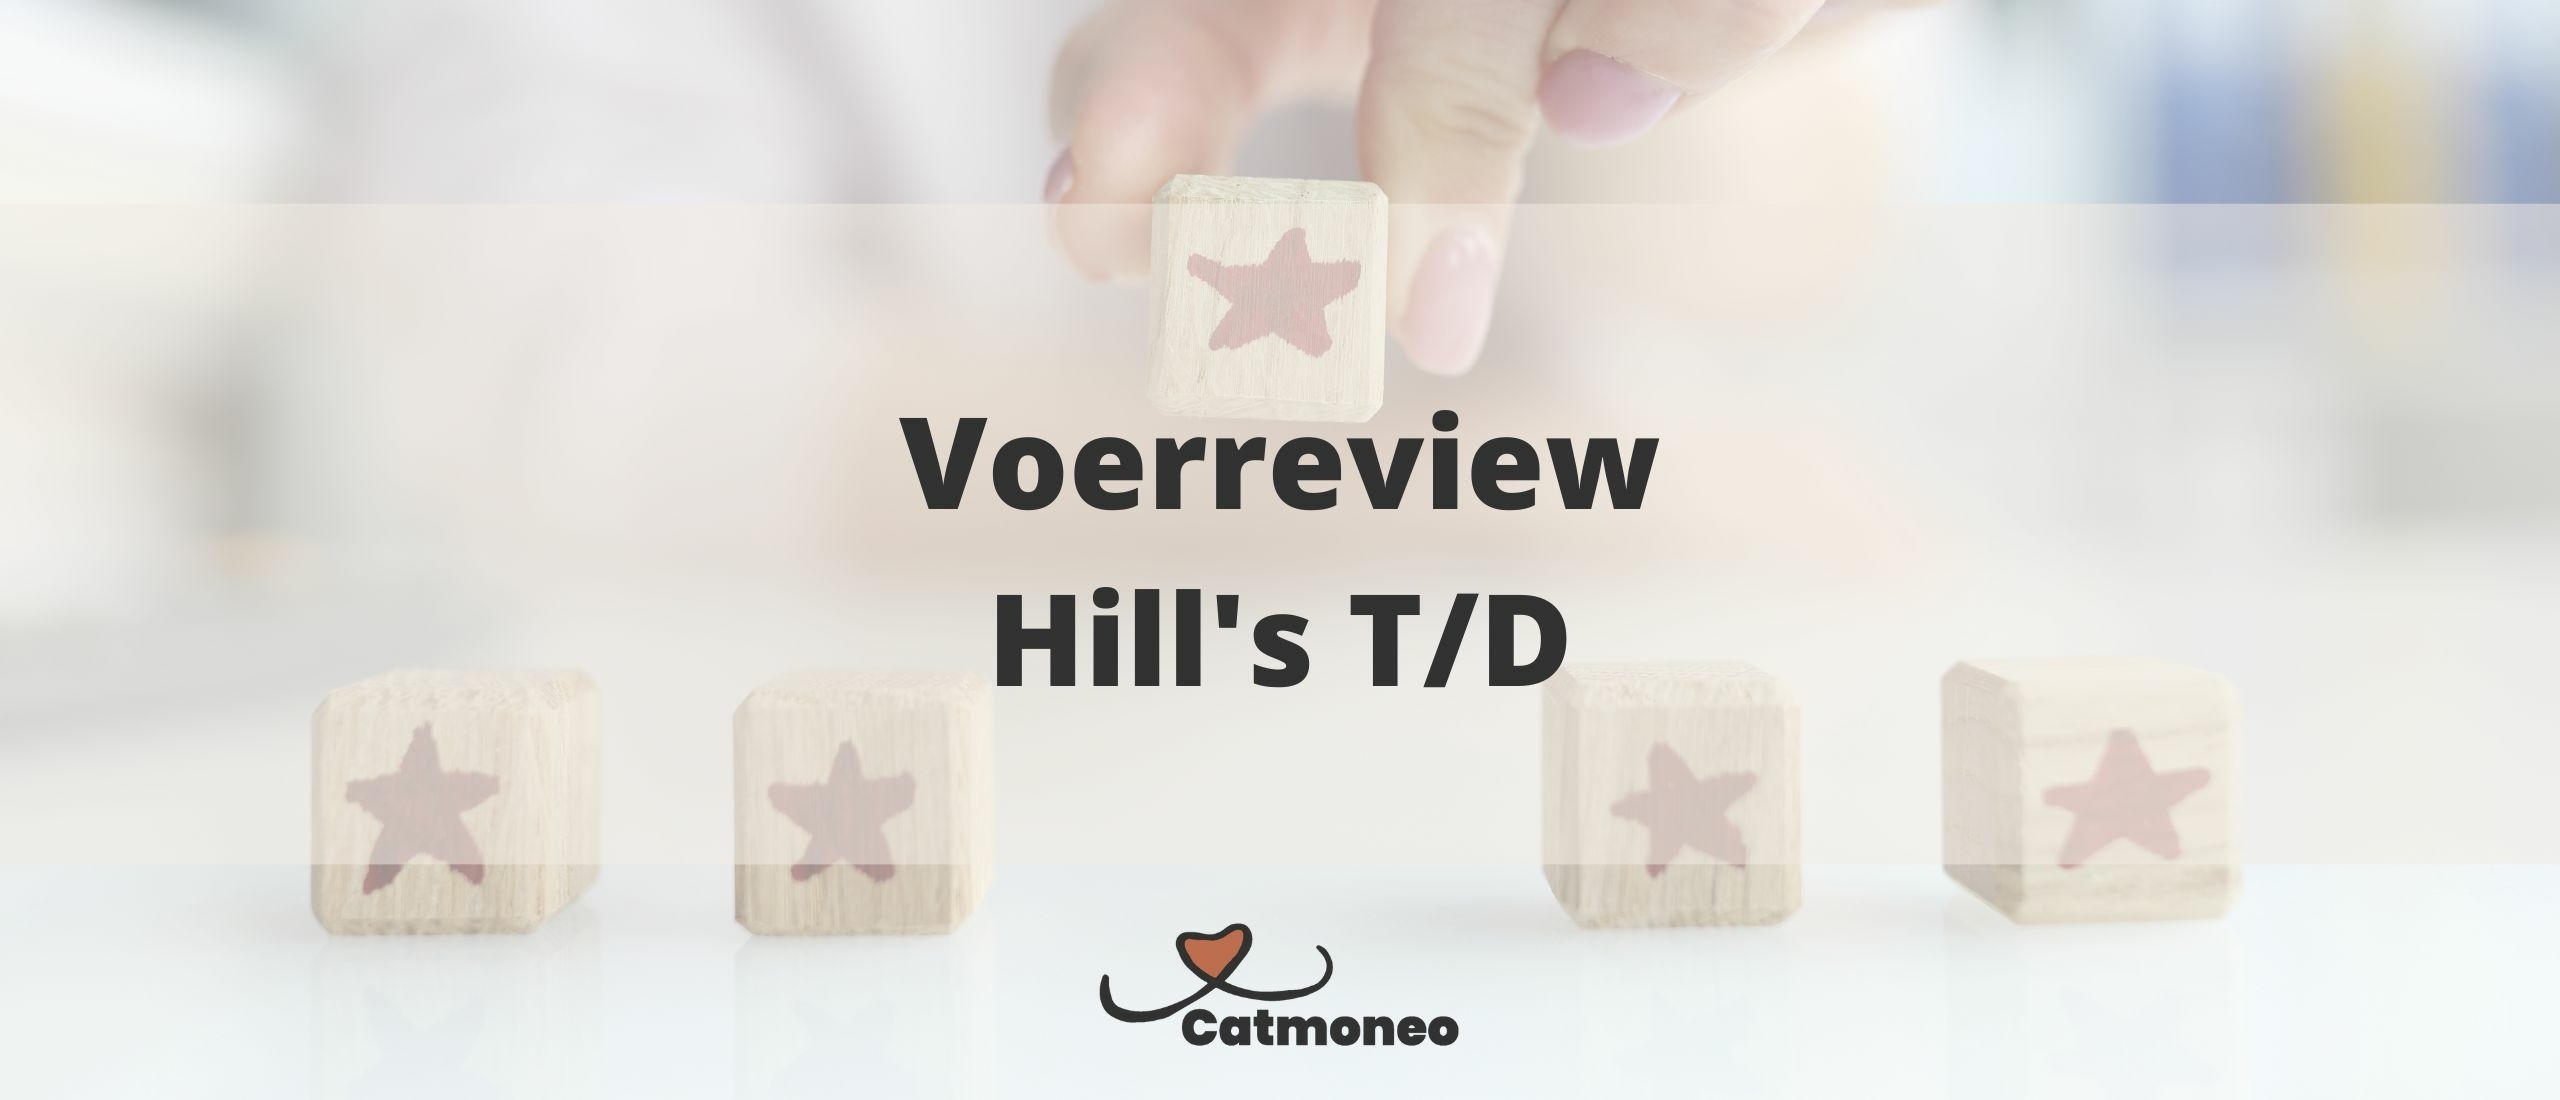 Review: Hills T/D brok